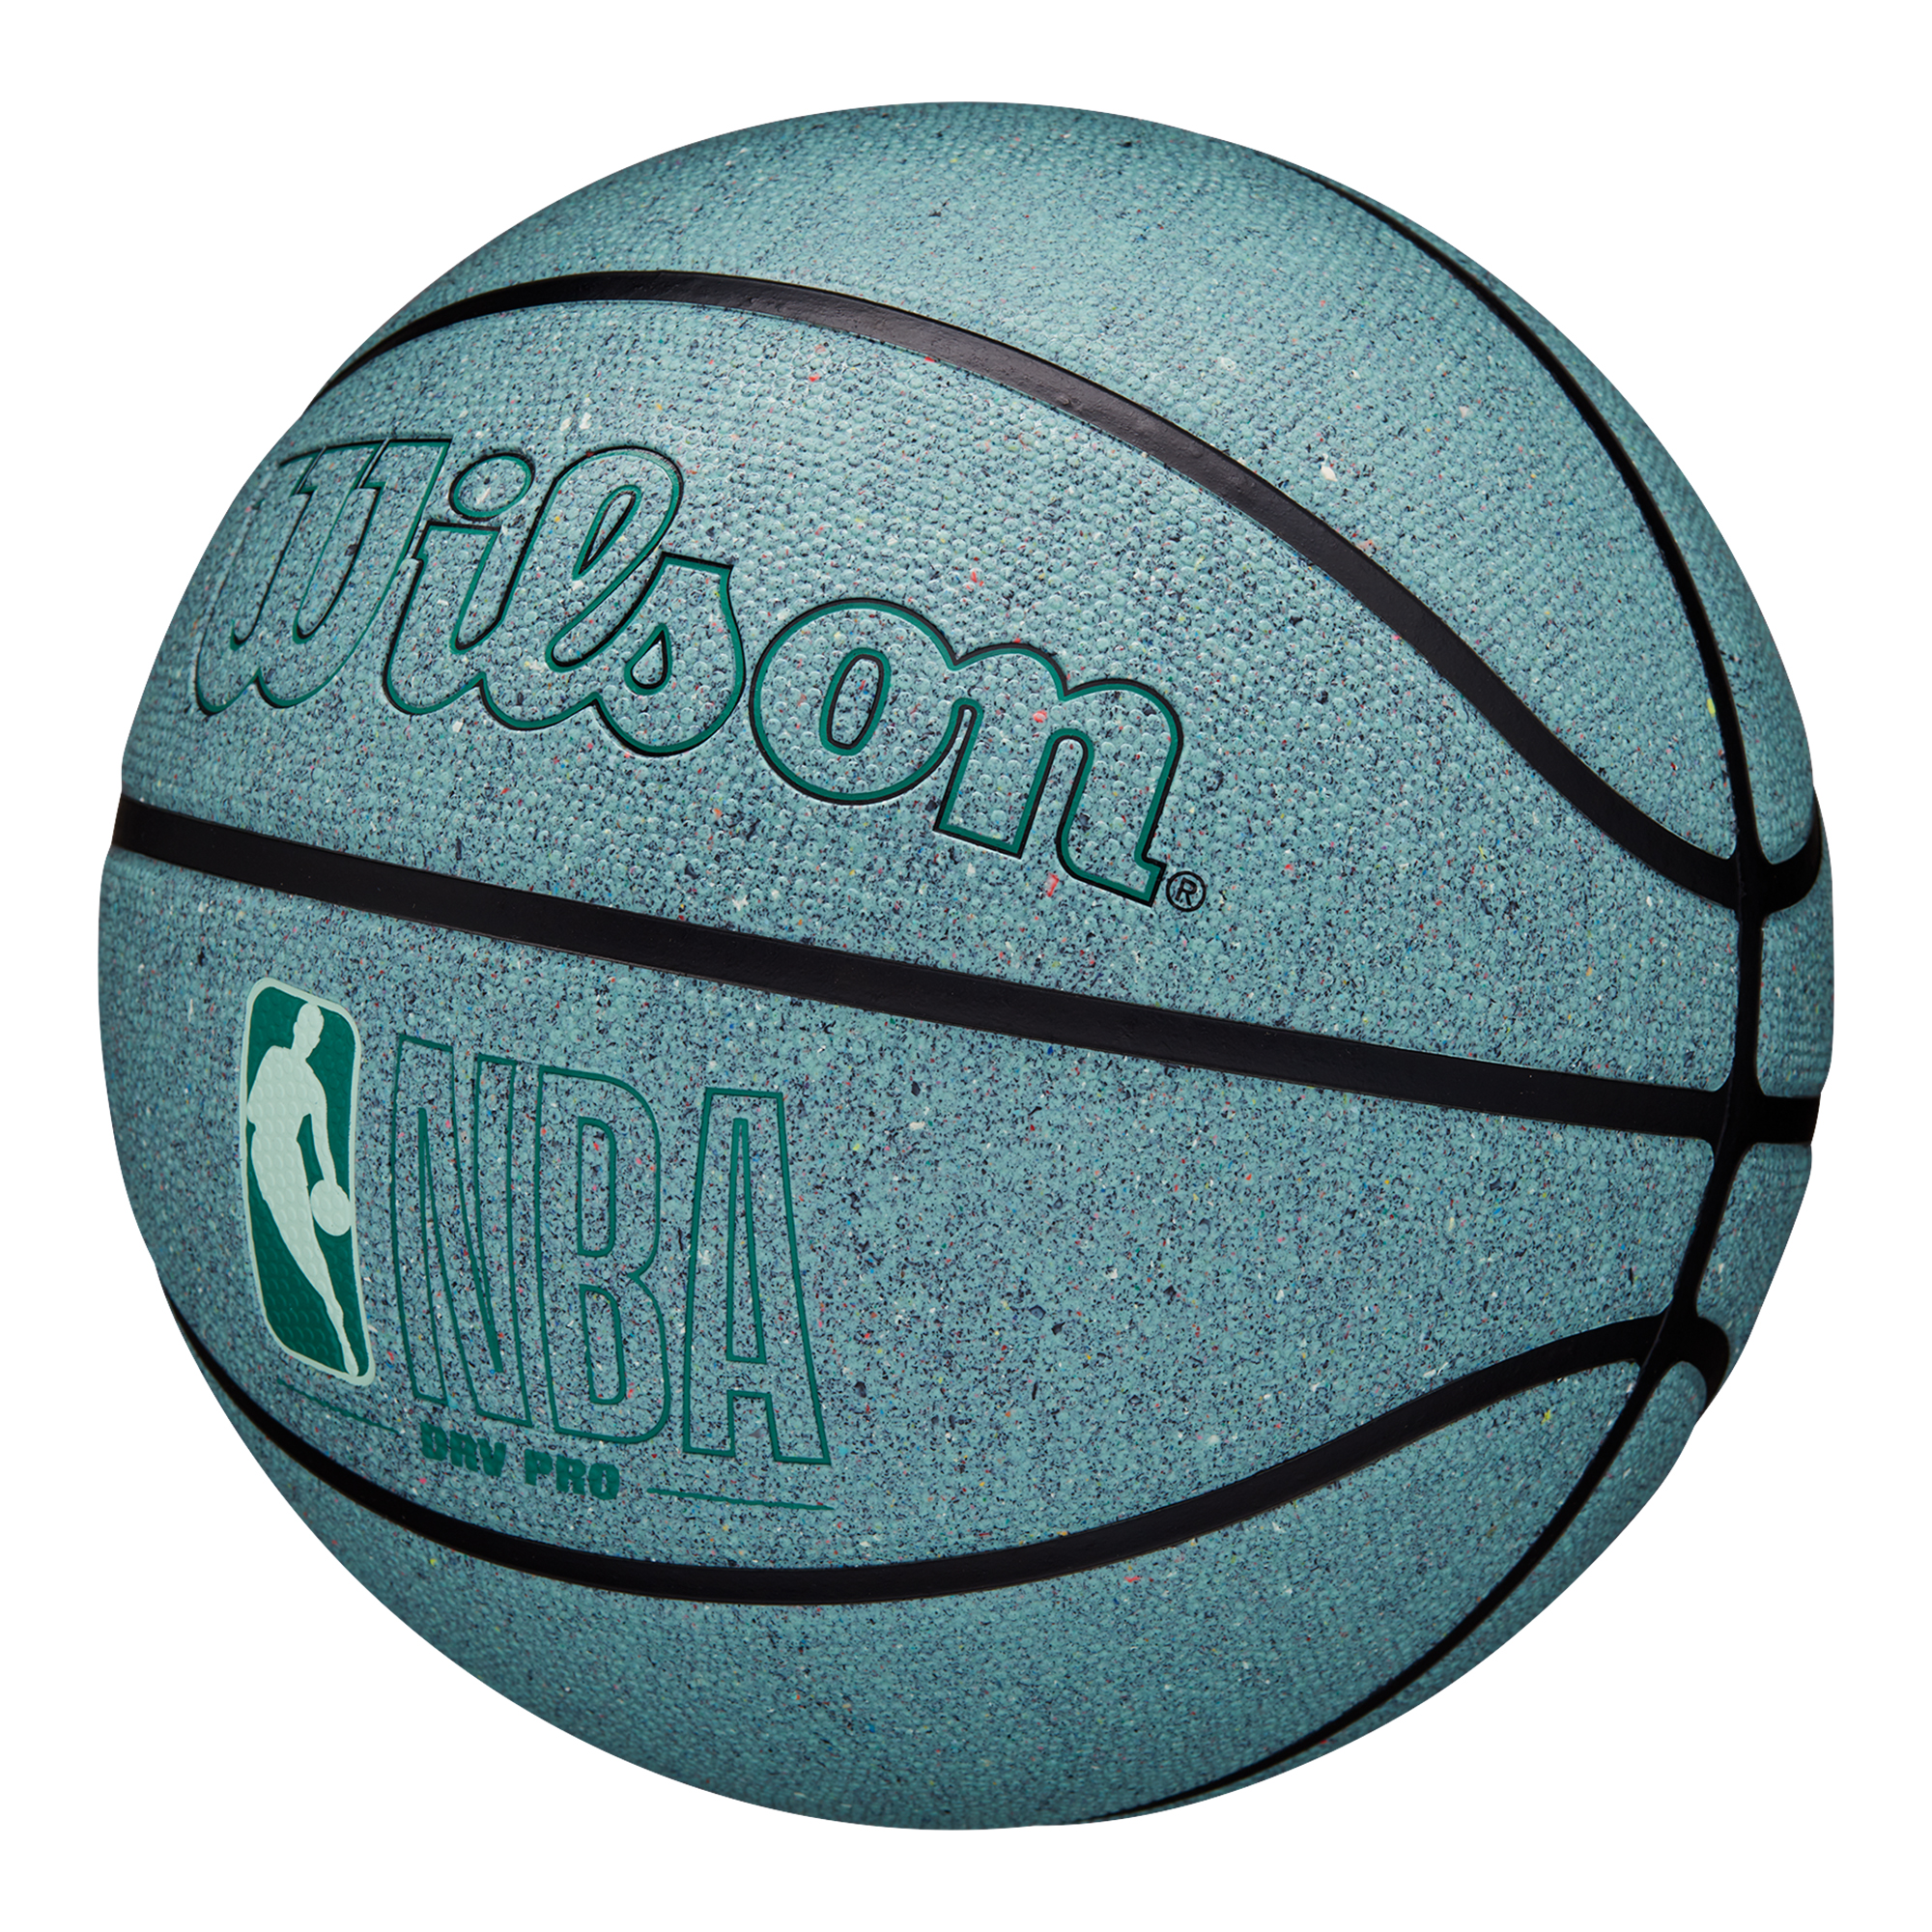 Wilson NBA DRV Pro Eco Basketball